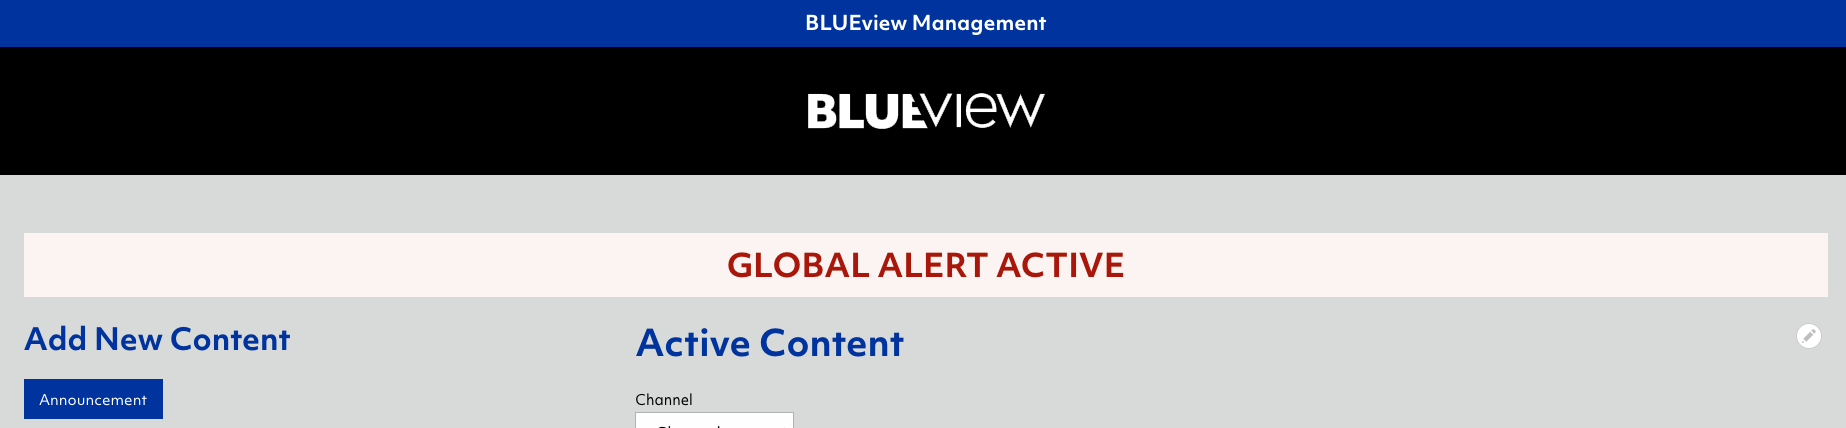 BLUEview management - Global Alert message